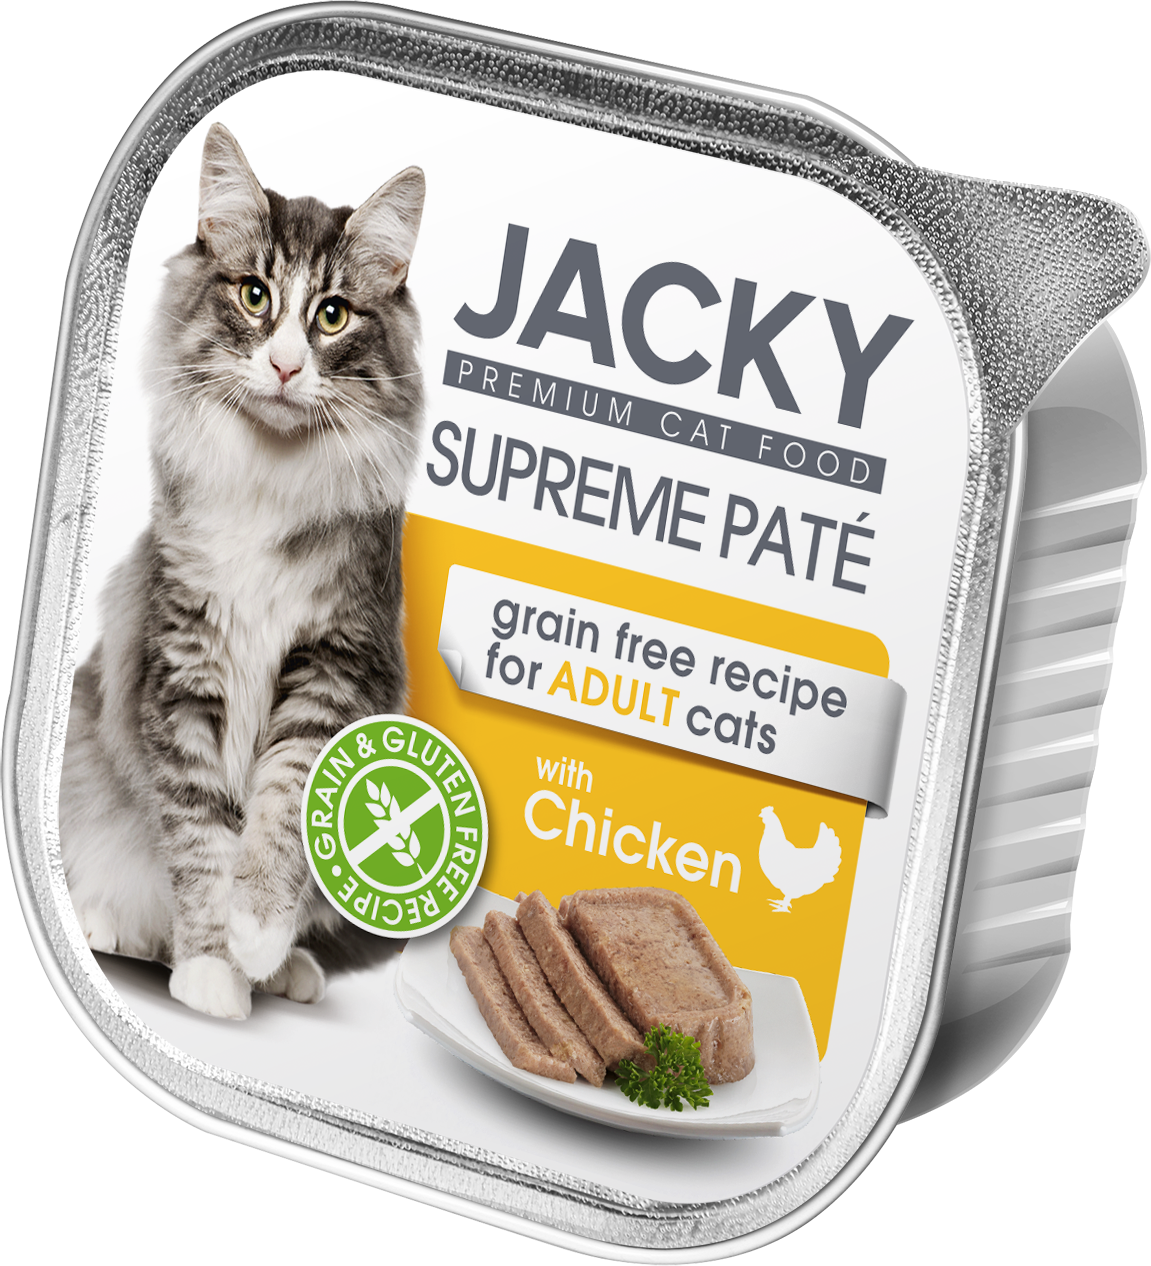 Jacky Supreme Paté pate de pui 100g, conservă pentru pisici